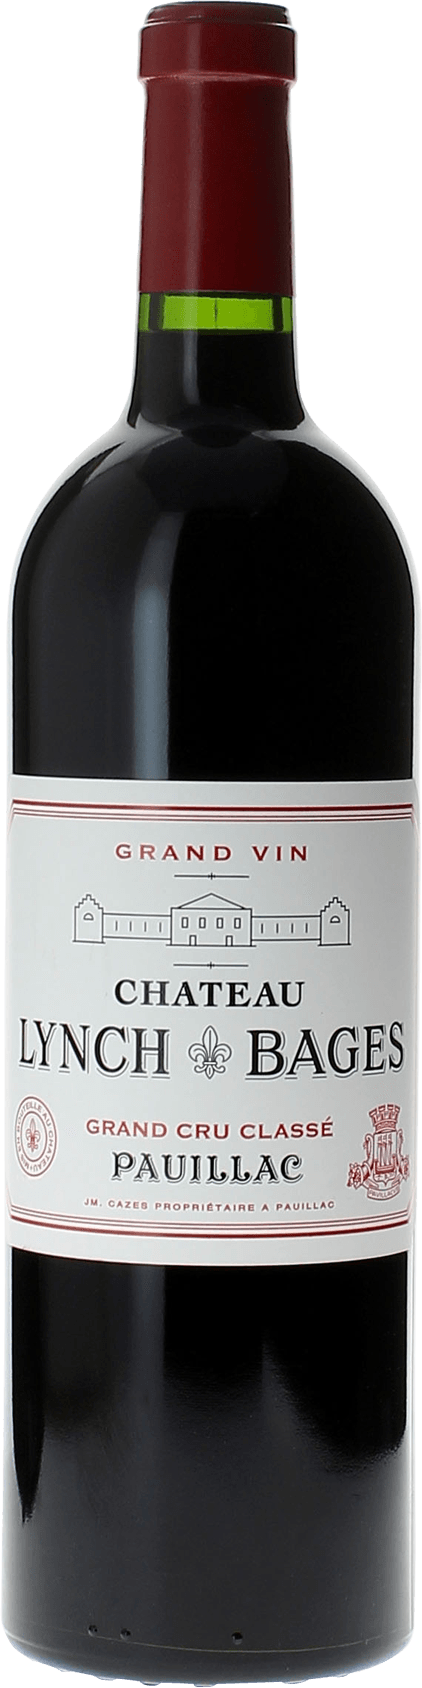 Lynch bages 1961 5 me Grand cru class Pauillac, Bordeaux rouge